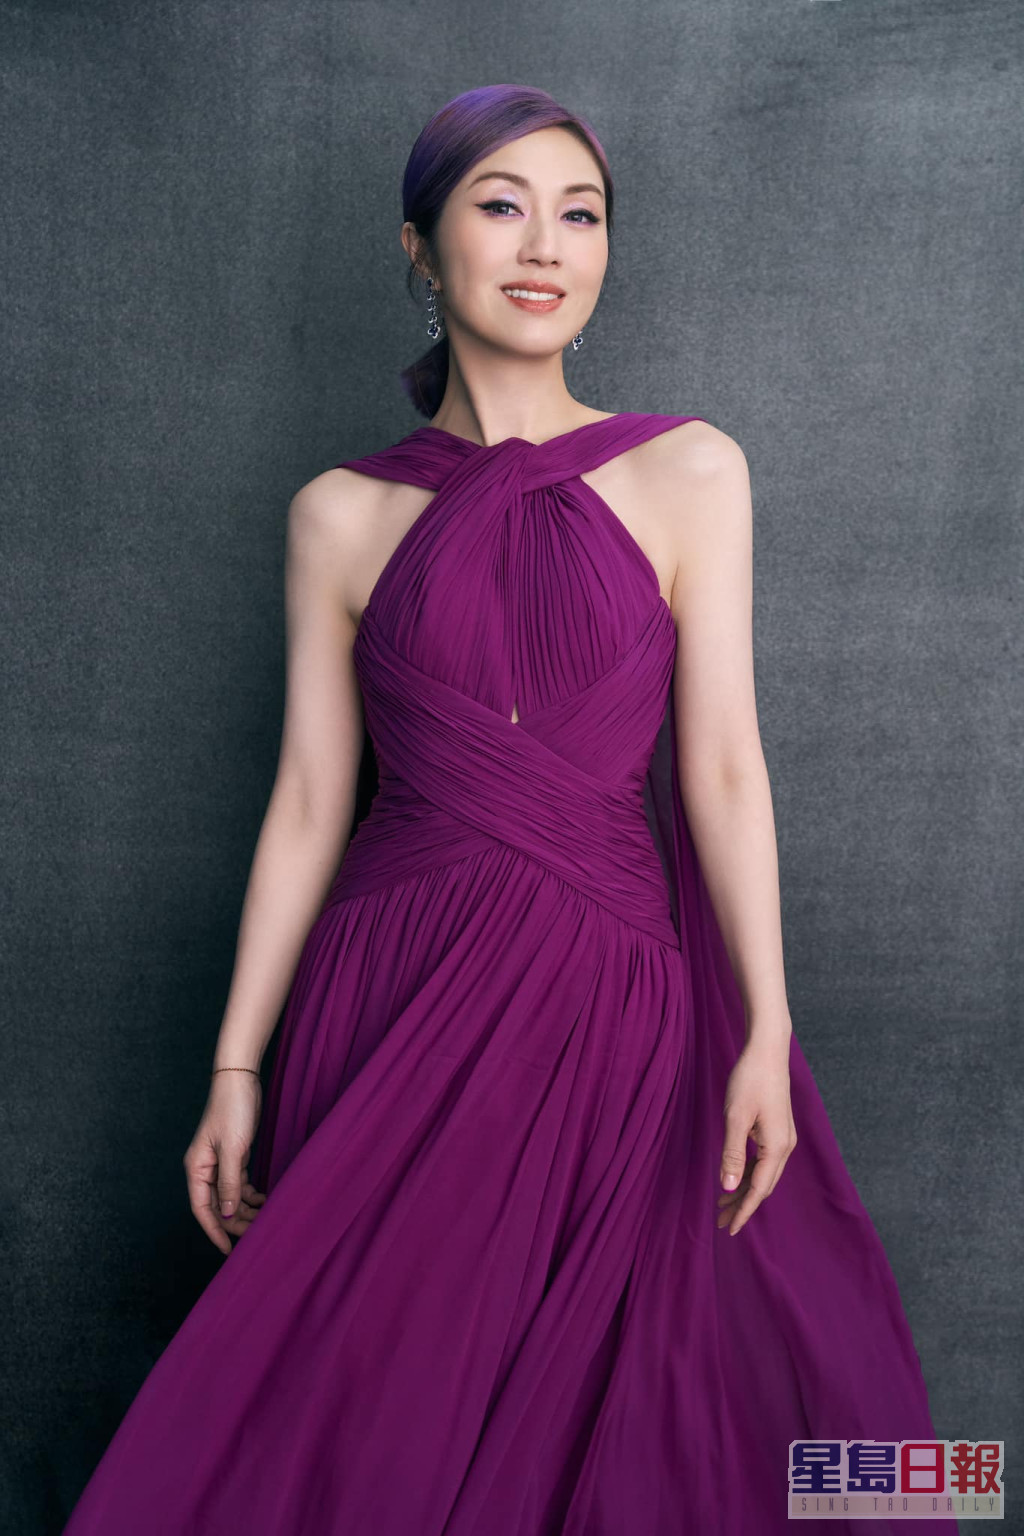 楊千嬅一直都鍾情紫色，其紫色髮形更是她多年來的標誌。